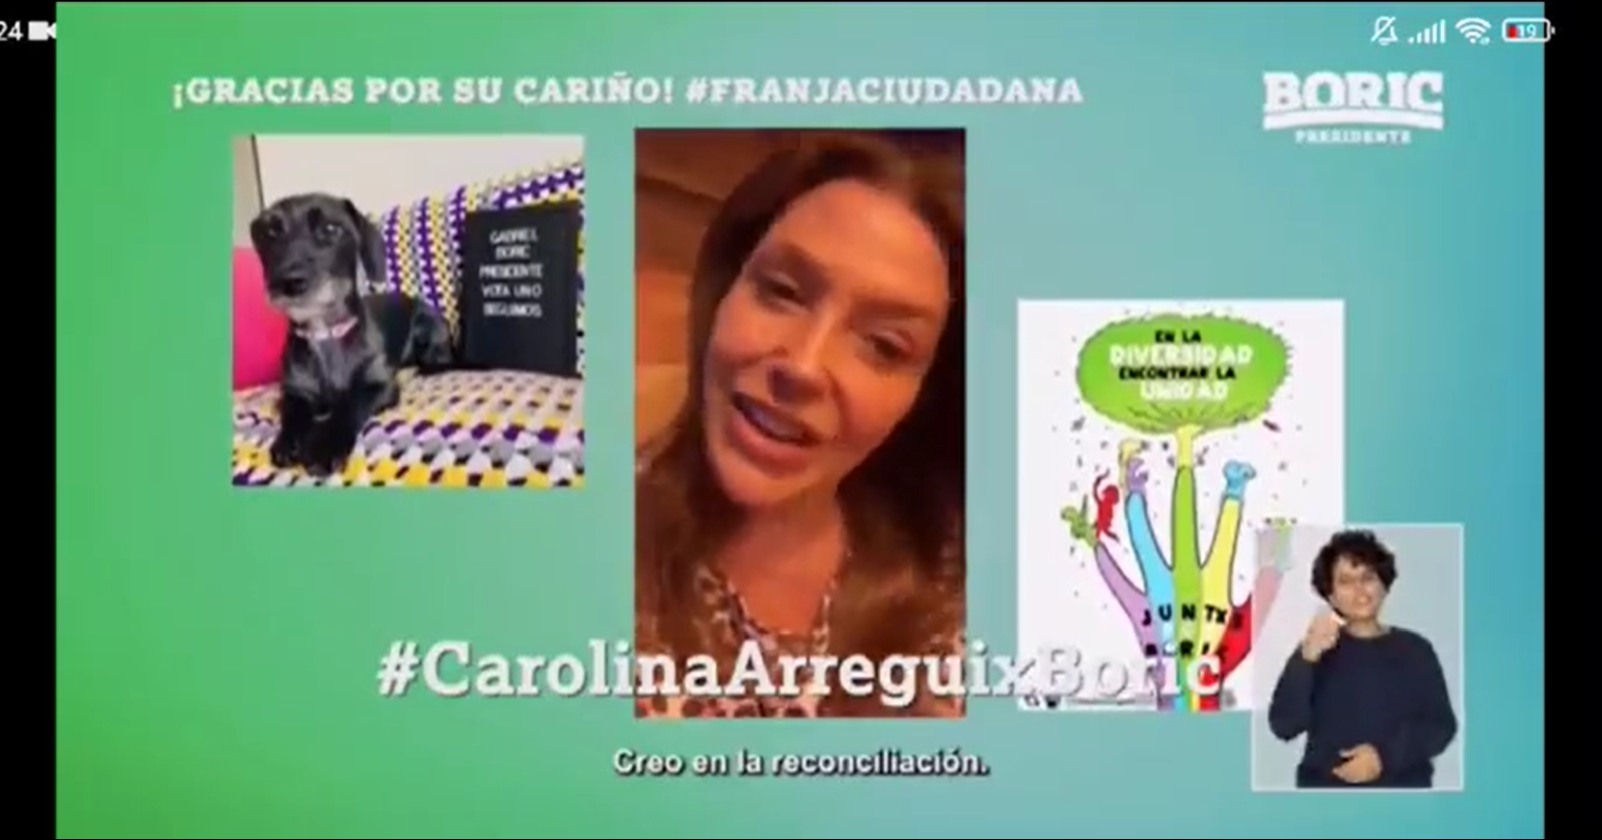 Carolina Arregui Boric